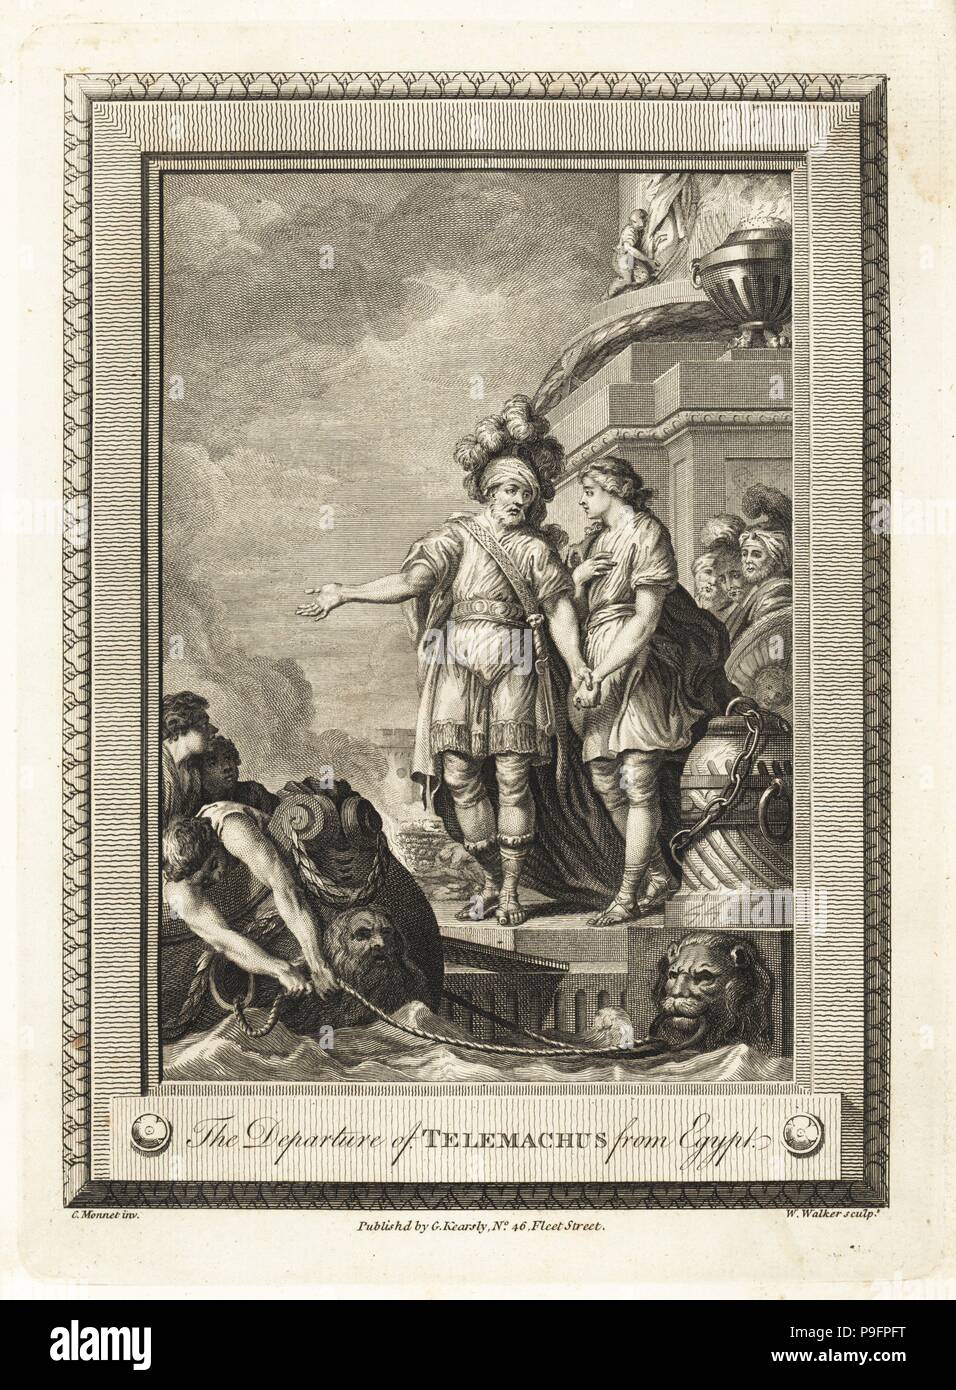 La partenza di Telemaco dall'Egitto. Incisione su rame di W. Walker dopo una illustrazione di C. Monnet dalla piastrina di rame rivista mensile o Tesoro, G. Kearsley, Londra, 1778. Foto Stock